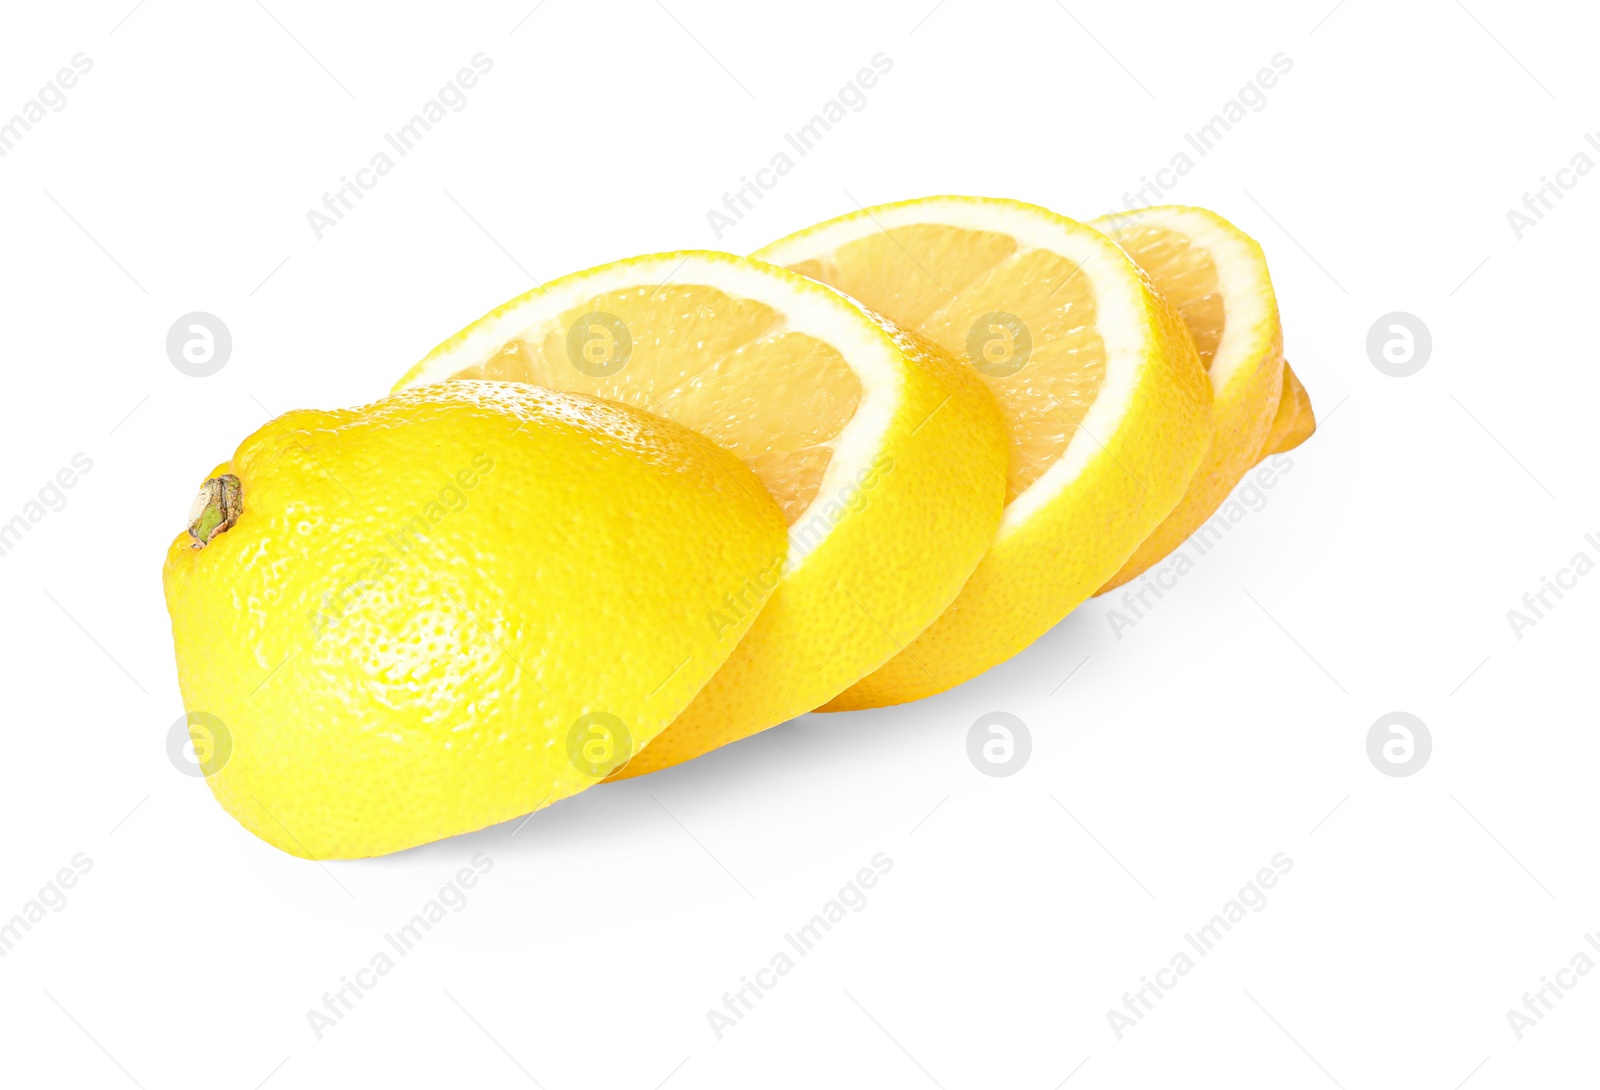 Photo of Fresh ripe cut lemon on white background